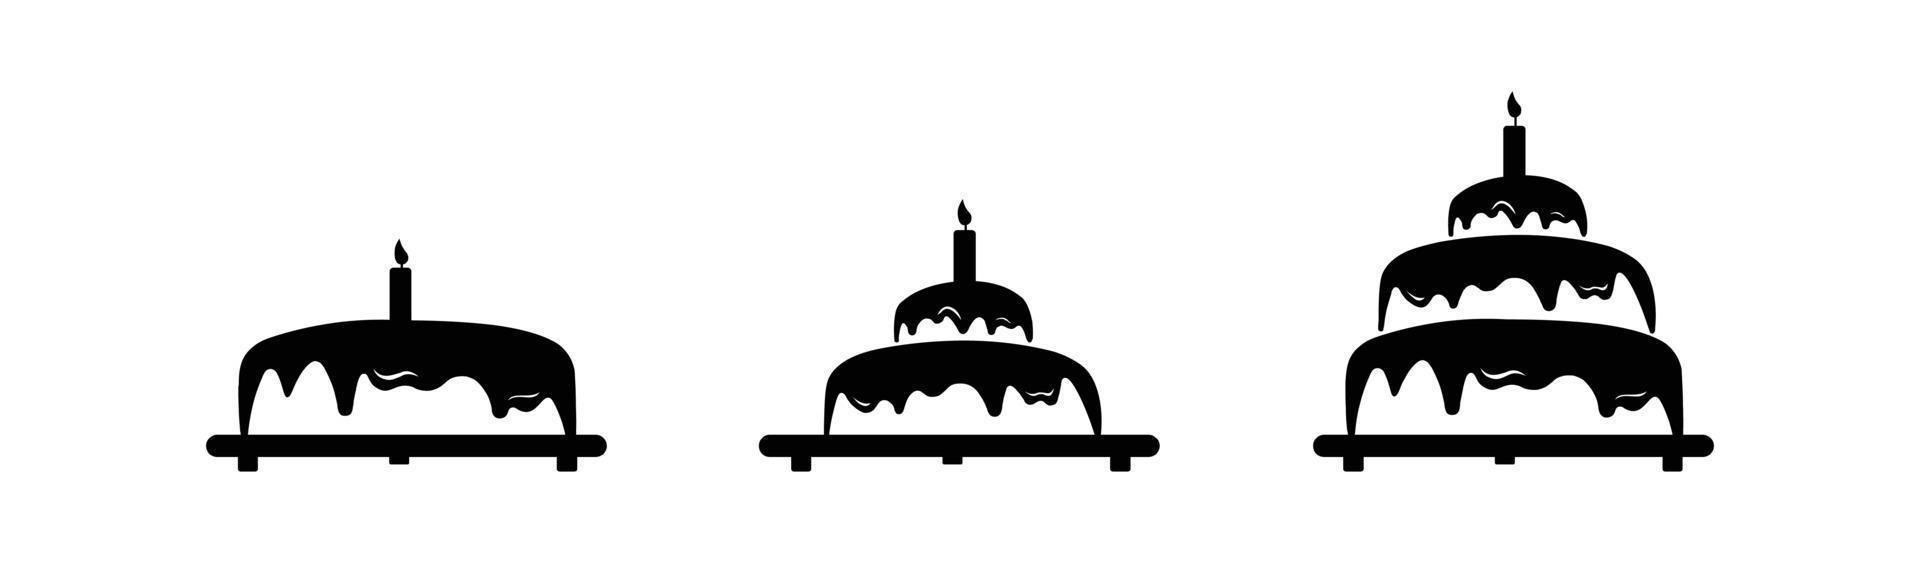 Plantilla de logotipo simple crema cupcake cereza, ilustración vectorial sobre fondo blanco y negro. vector